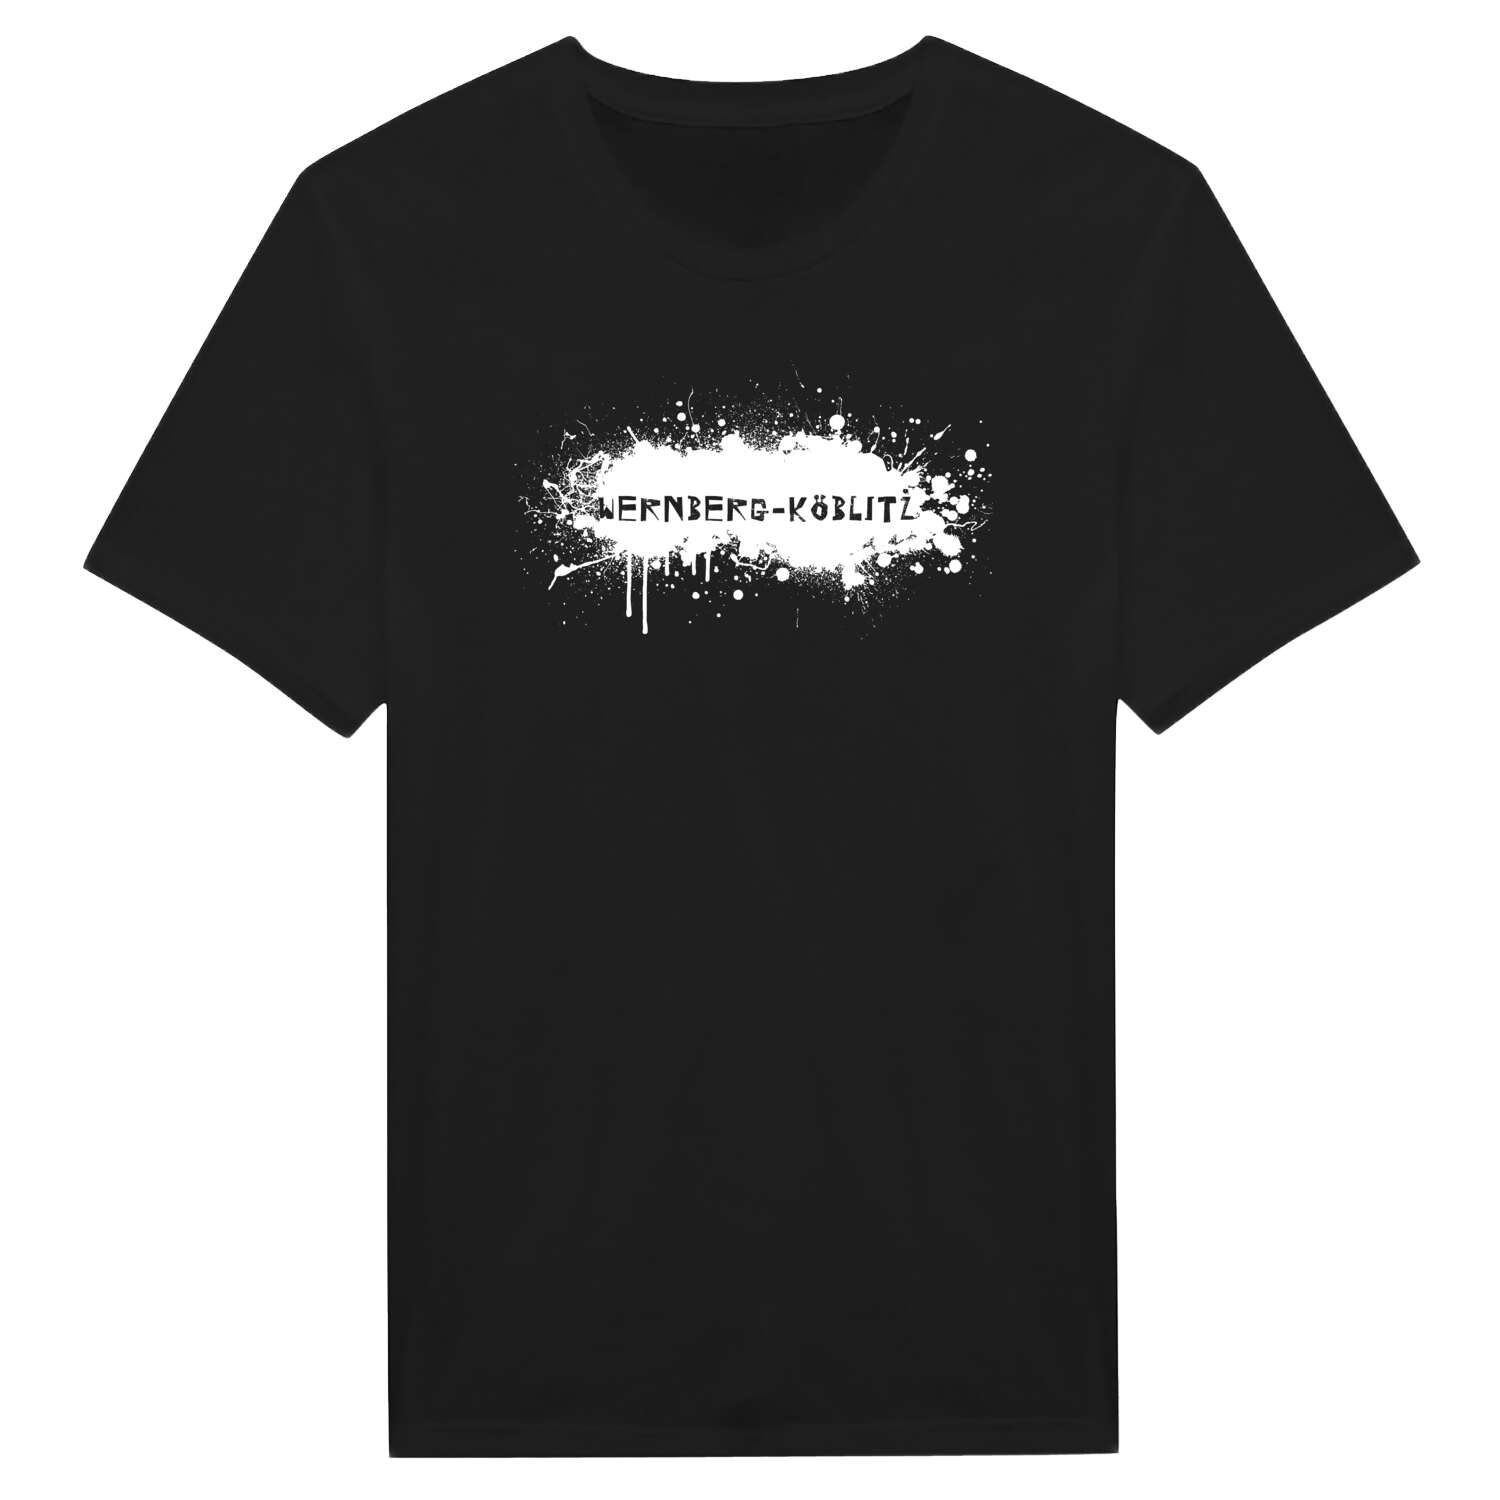 Wernberg-Köblitz T-Shirt »Paint Splash Punk«